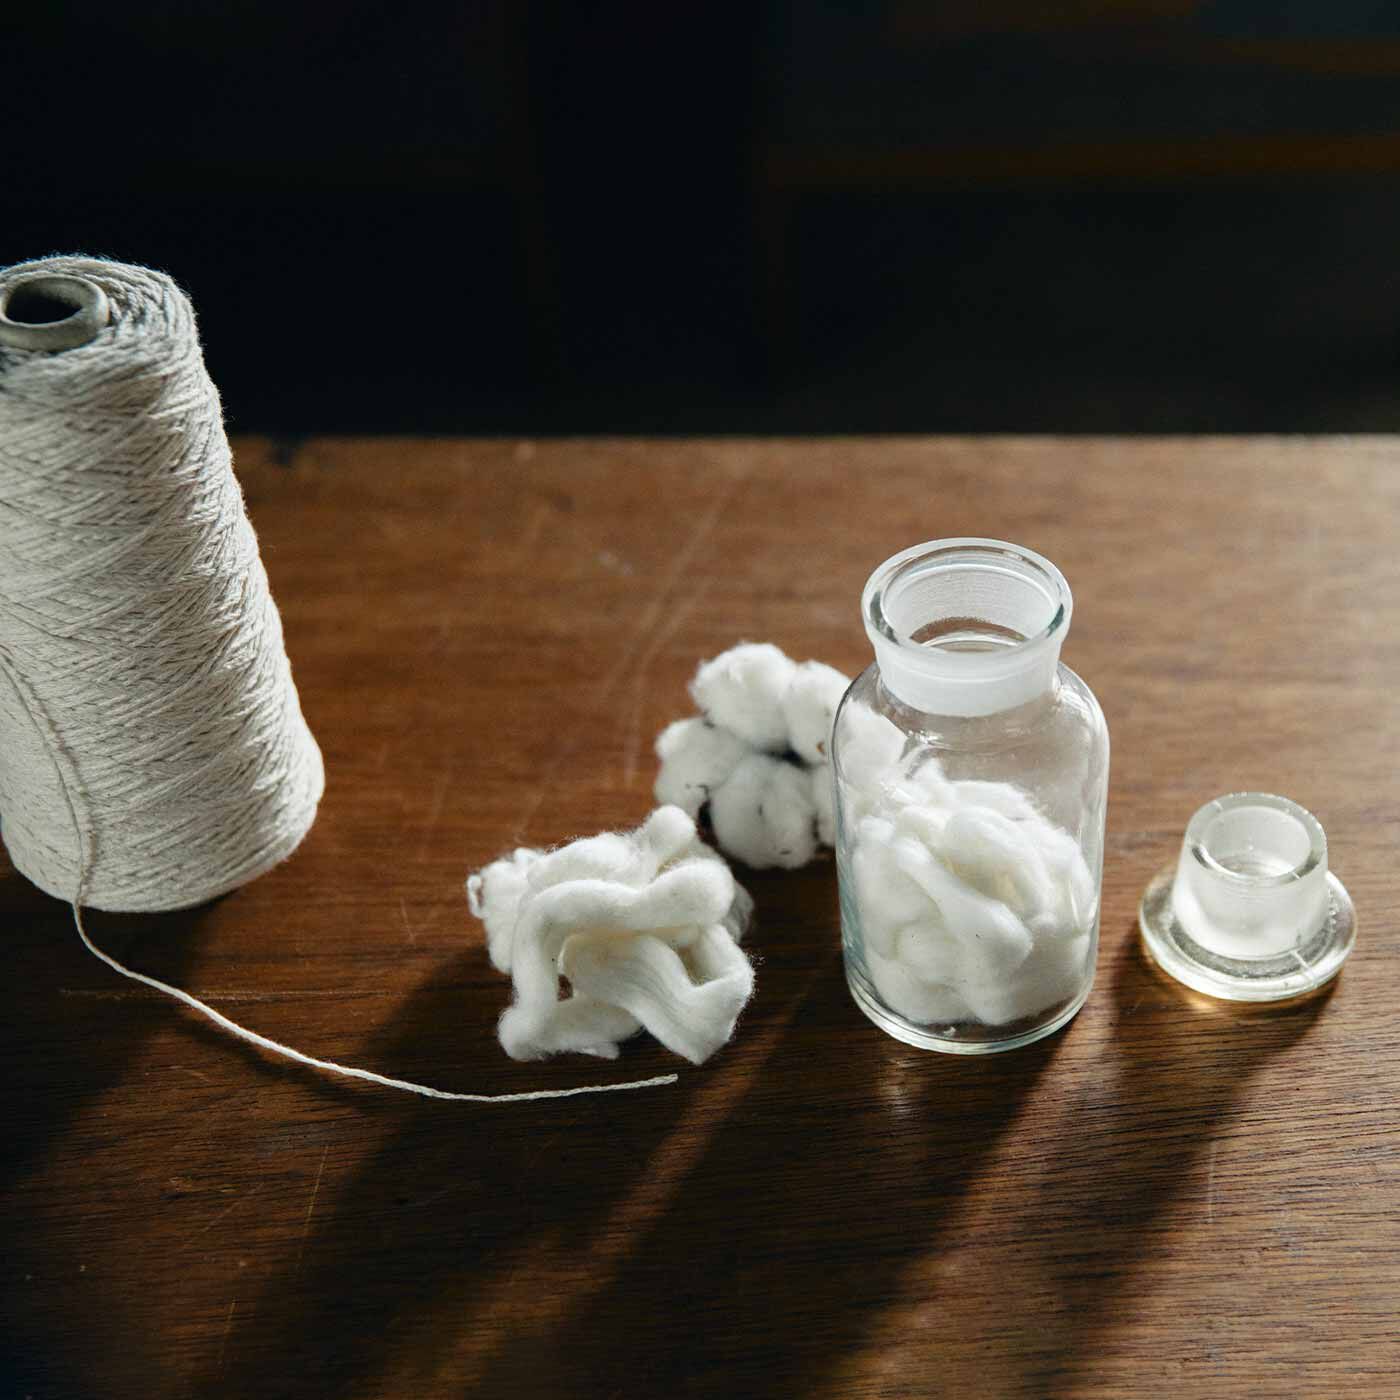 クチュリエ|リスノス×saredo シャリ感が心地よい わたかみりりりで編むネットバッグの会|超長綿の落ちわたと和紙強撚糸を撚り合わせ、編み物に適したリリヤーン糸に仕上げました。